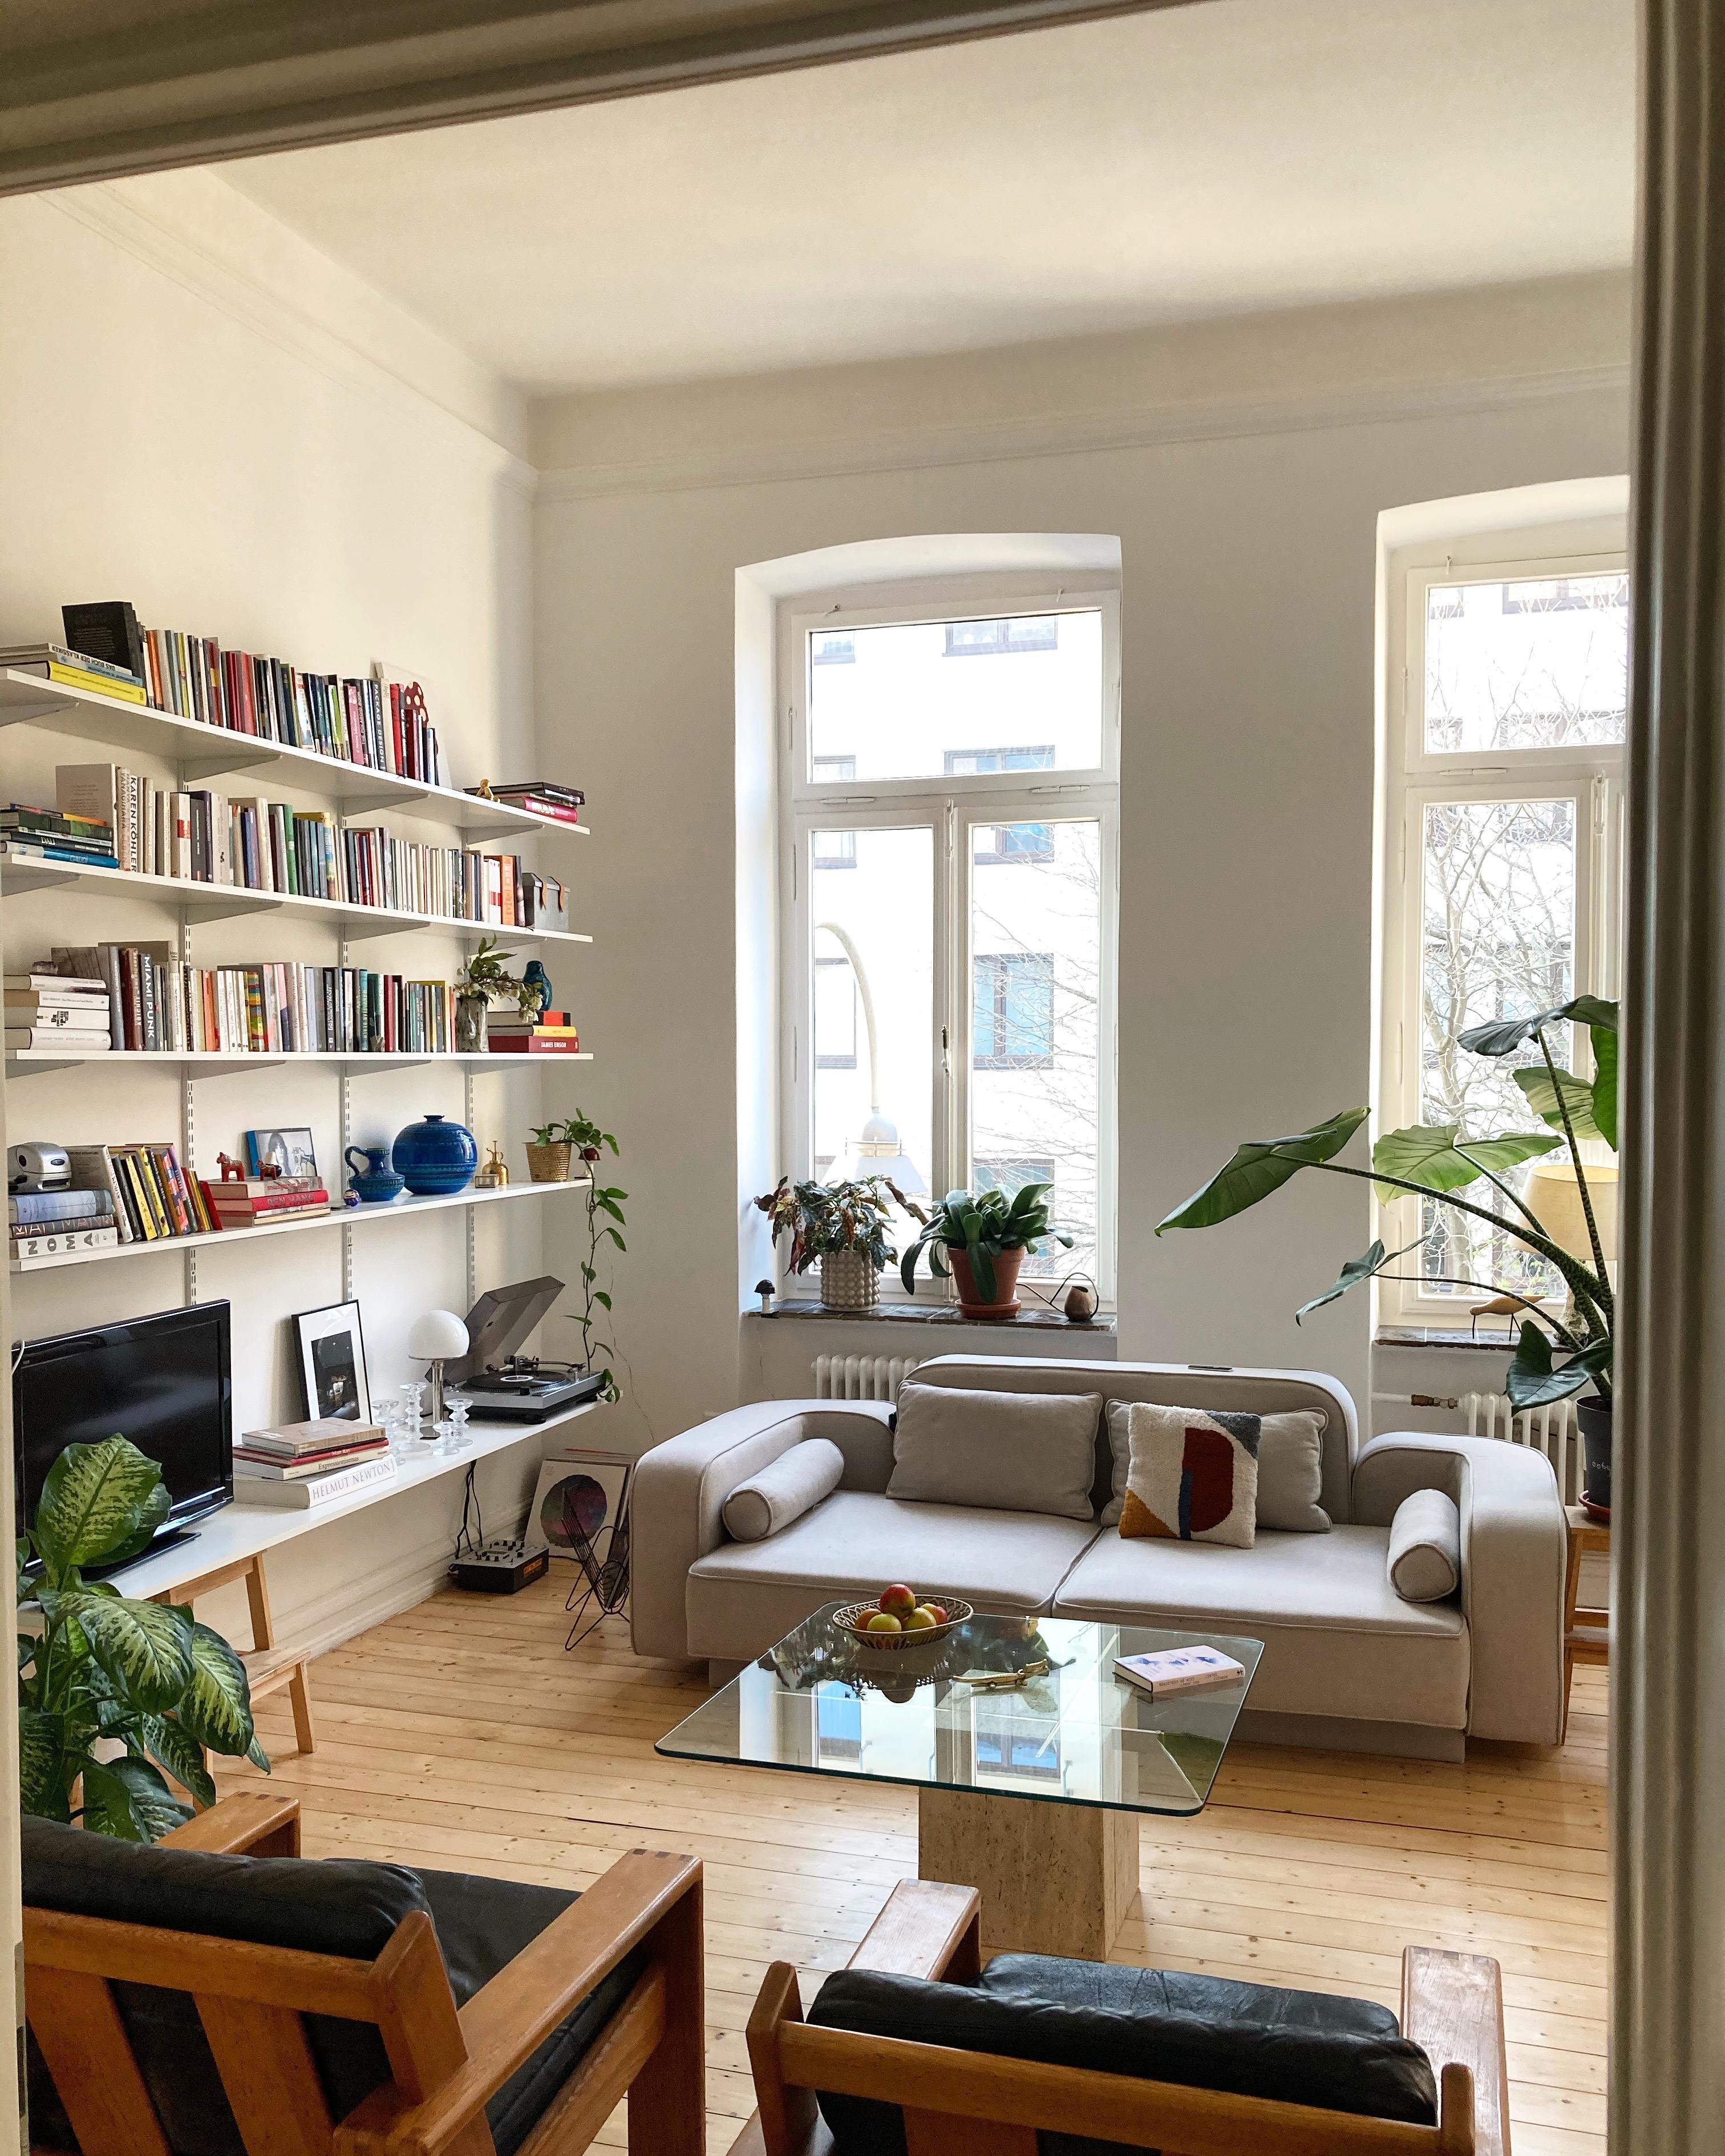 #livingroom#skandinavischwohnen#altbauliebe#bücherregal#cozyhome#plantlover